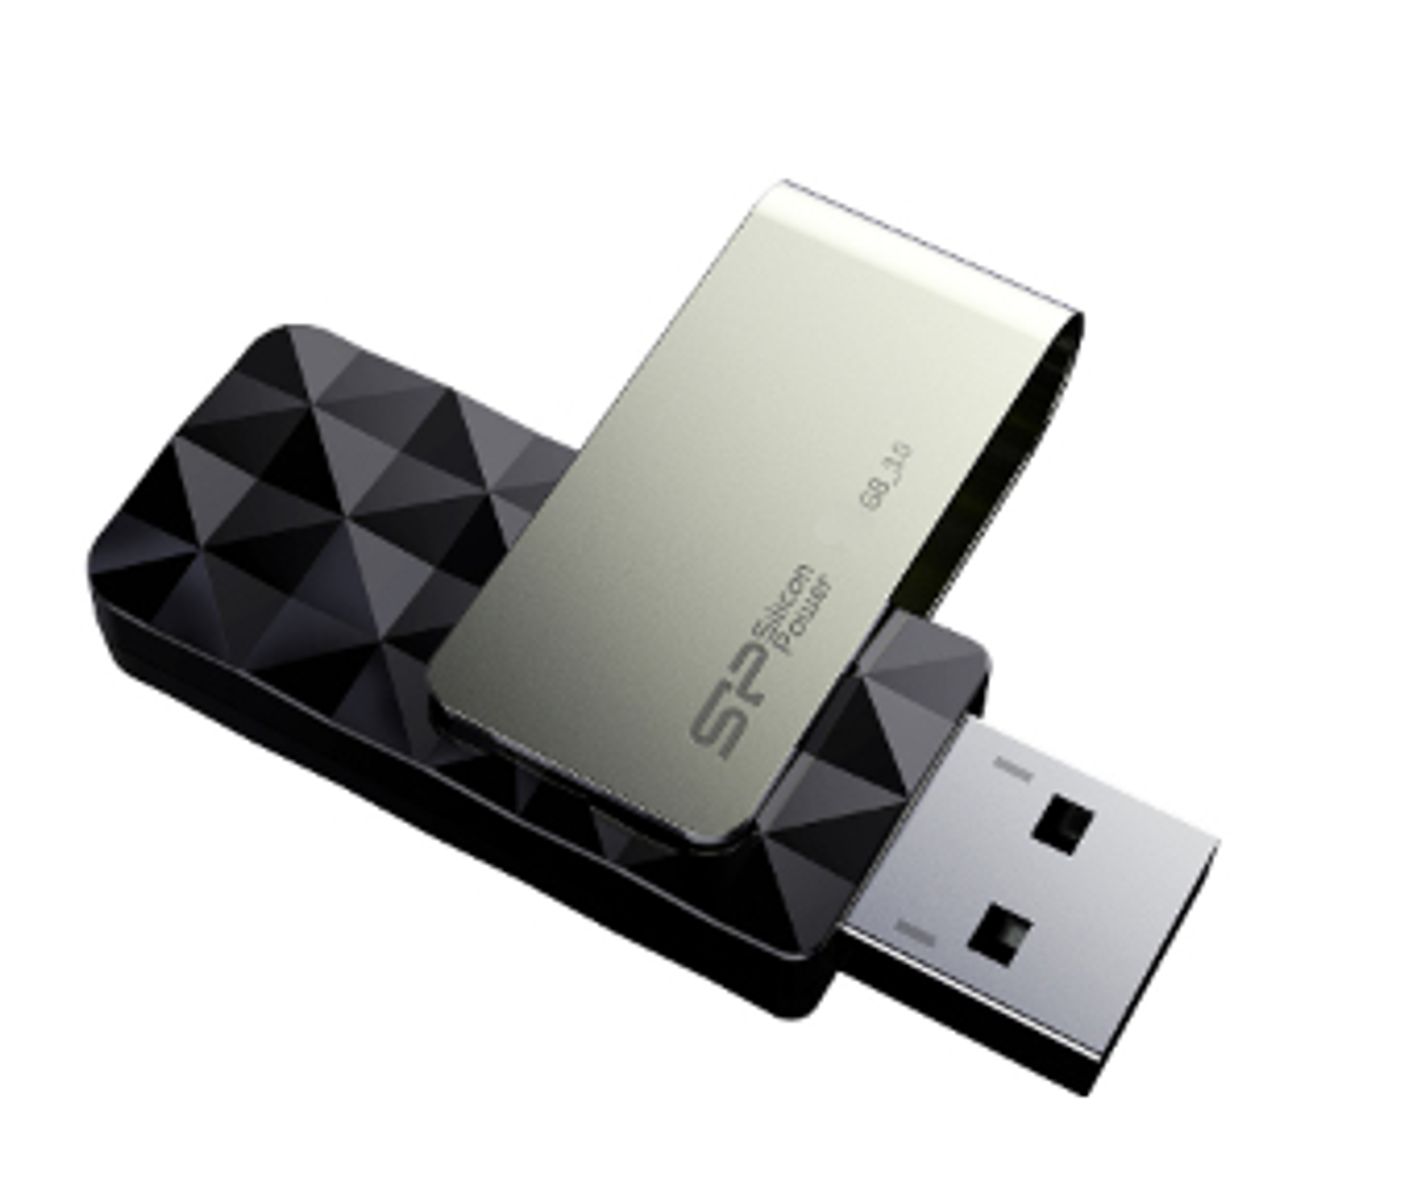 256 (Schwarz, 4712702644333 GB) SILICON USB-Flash-Laufwerk POWER